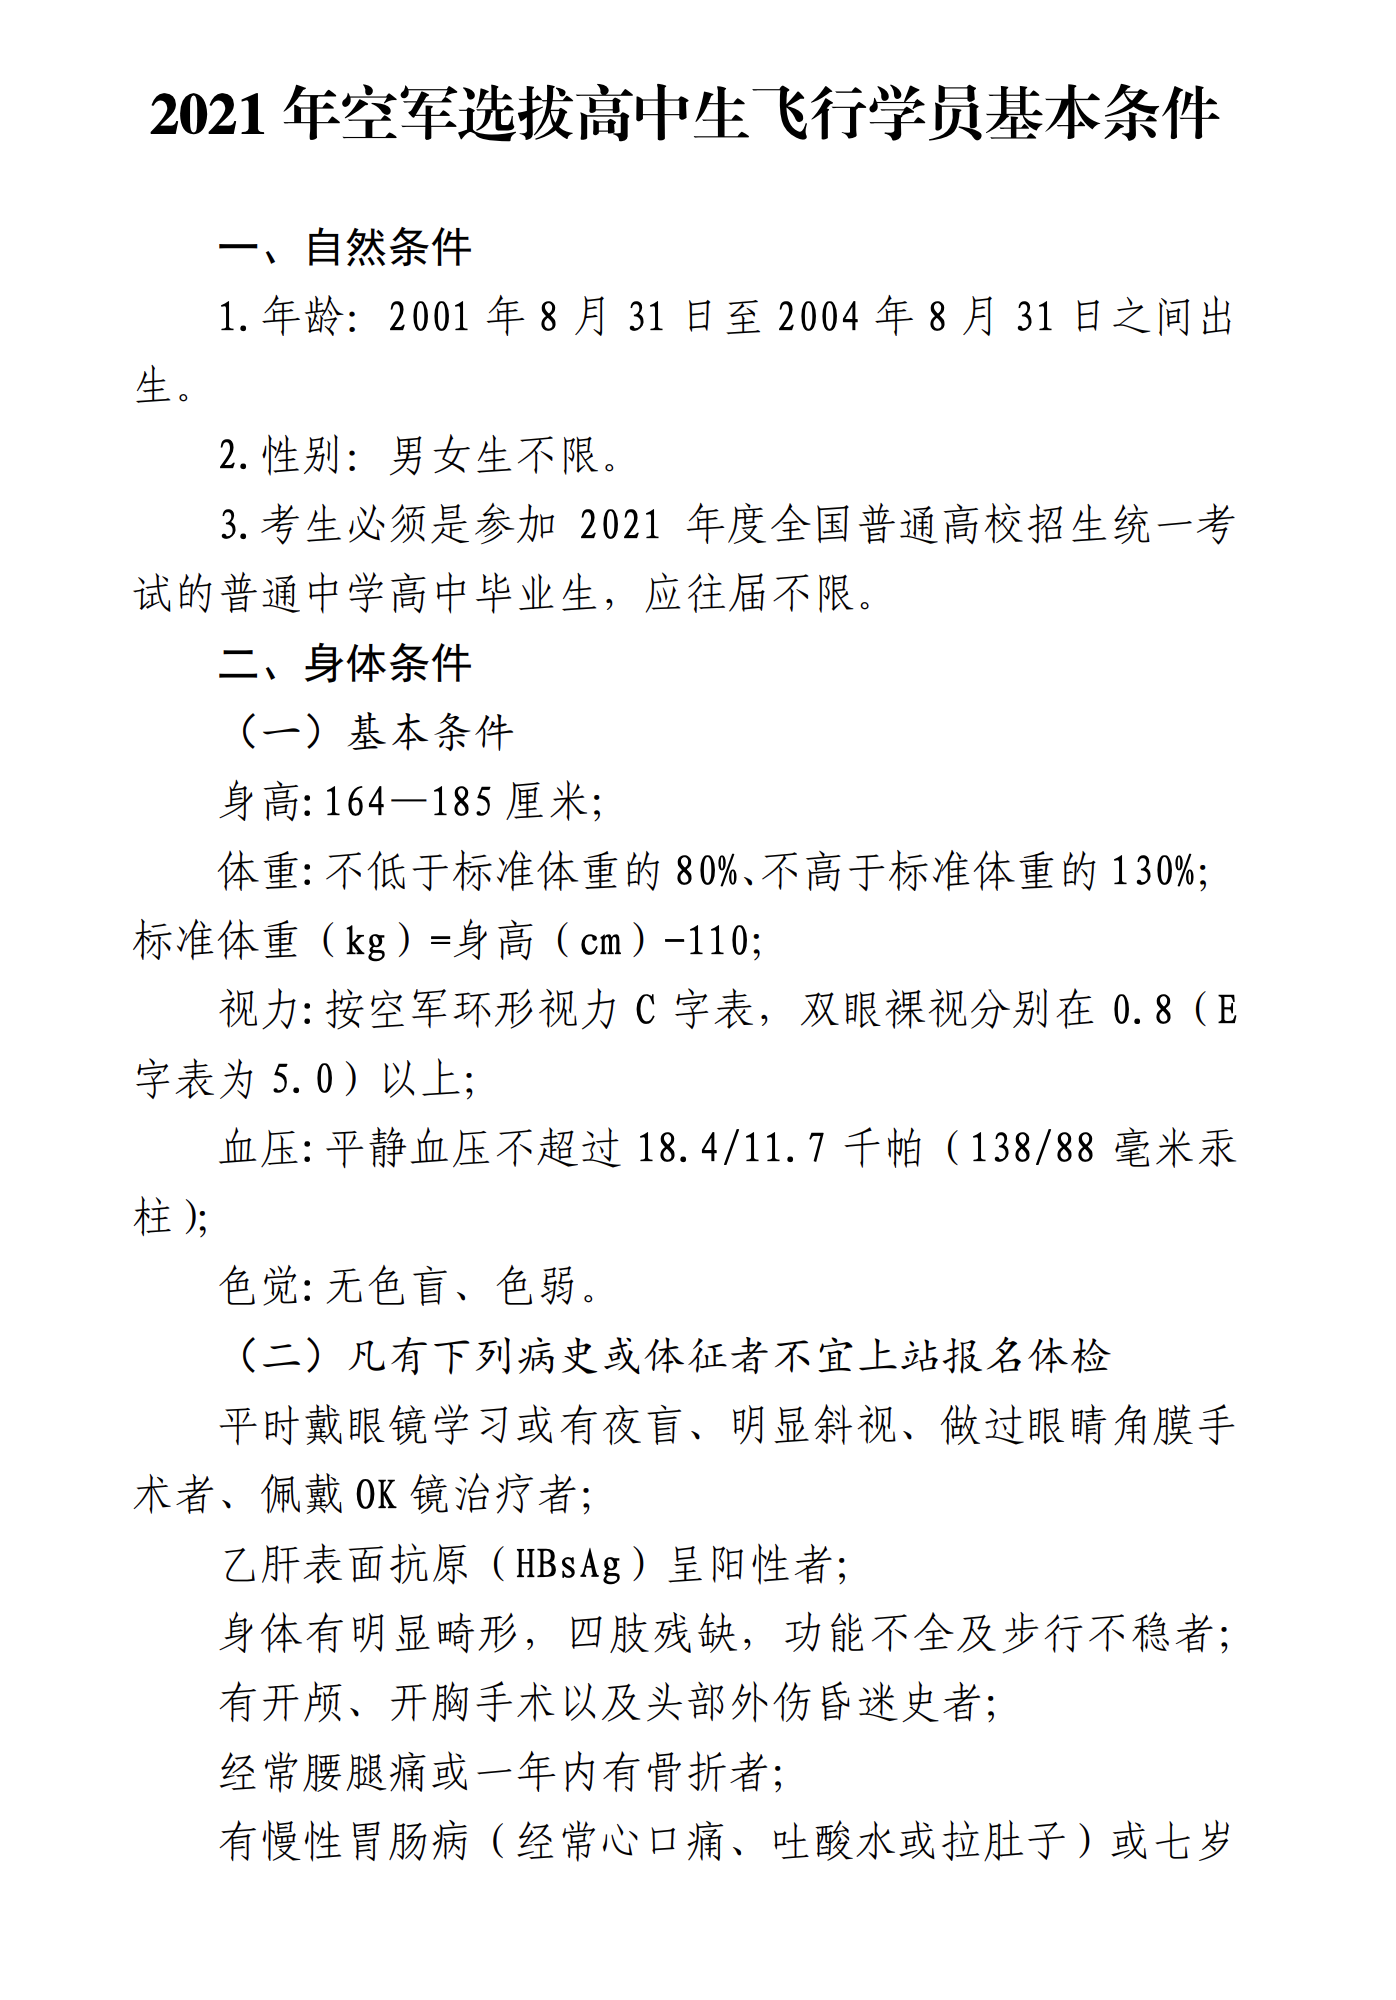 上海：2021年空军招飞（上海地区）初选工作将于11月7日进行